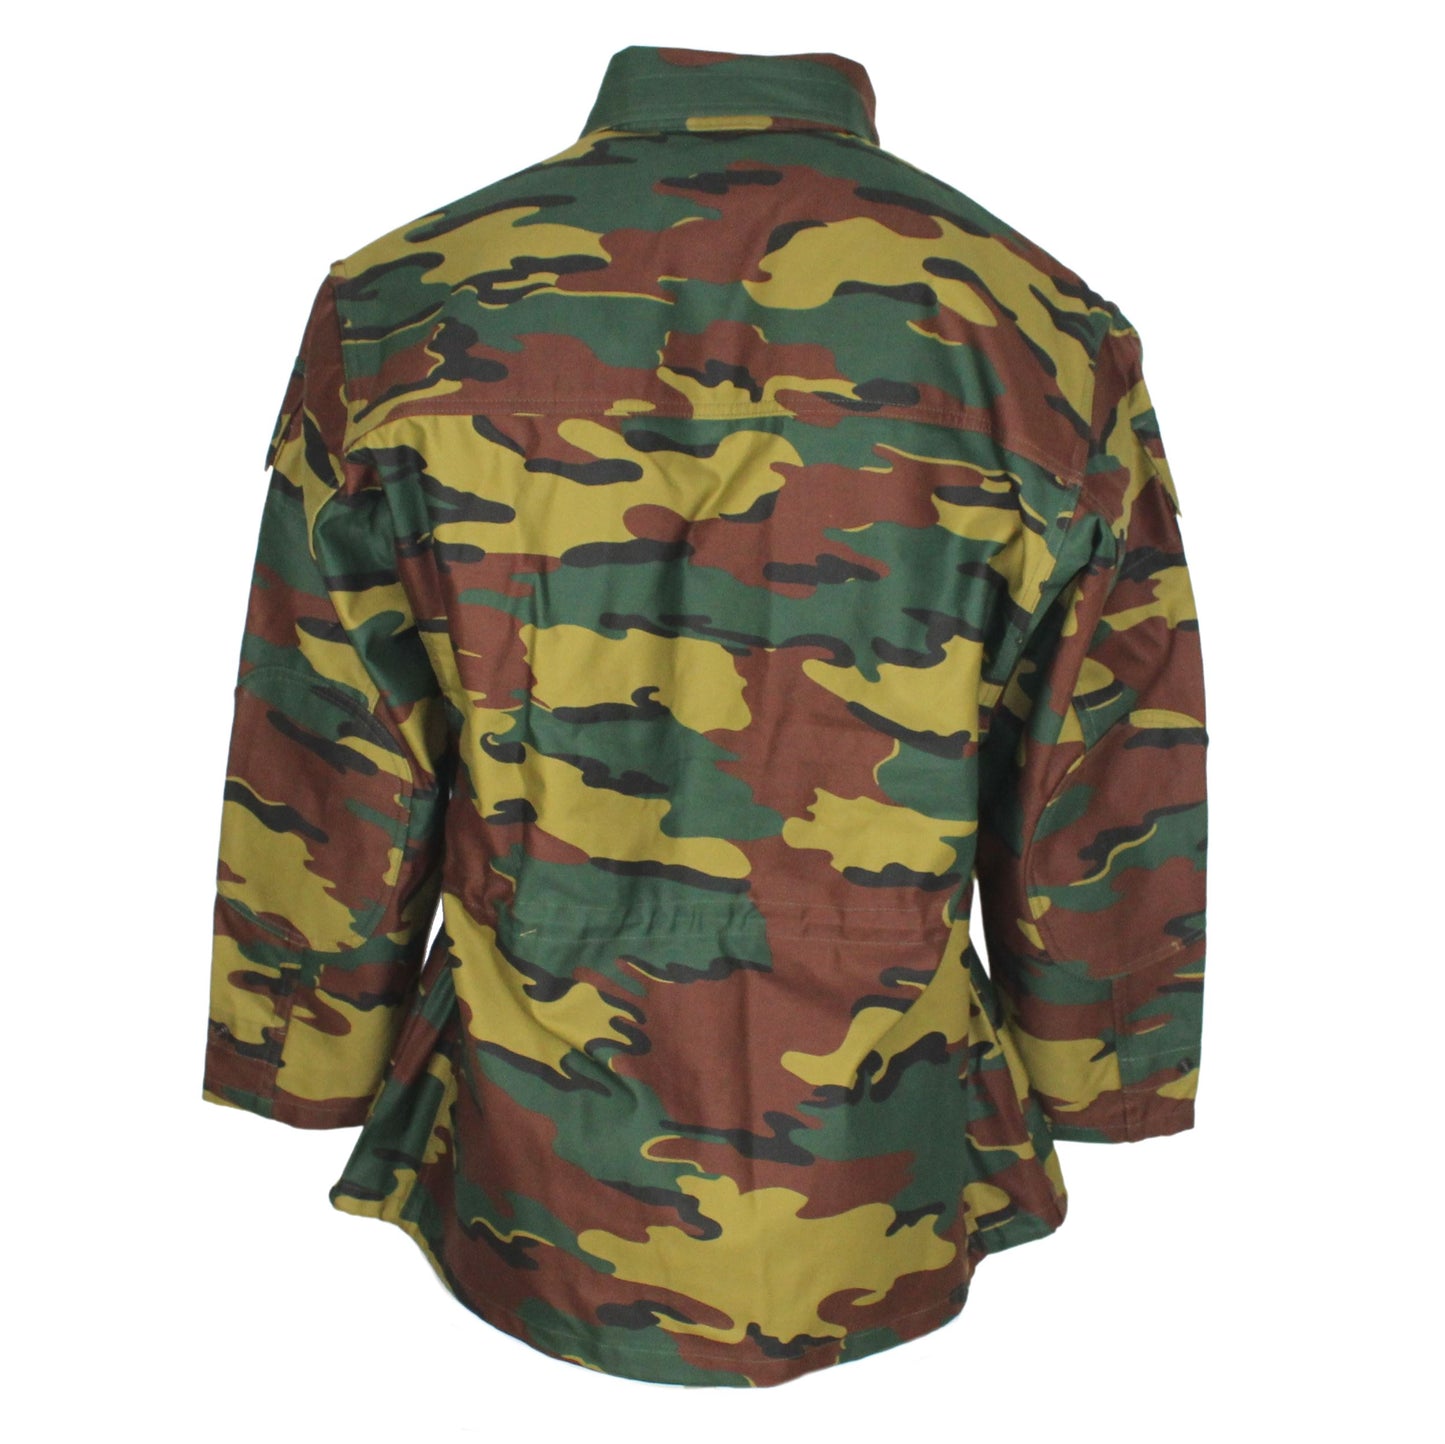 Veste camouflage armée Belge